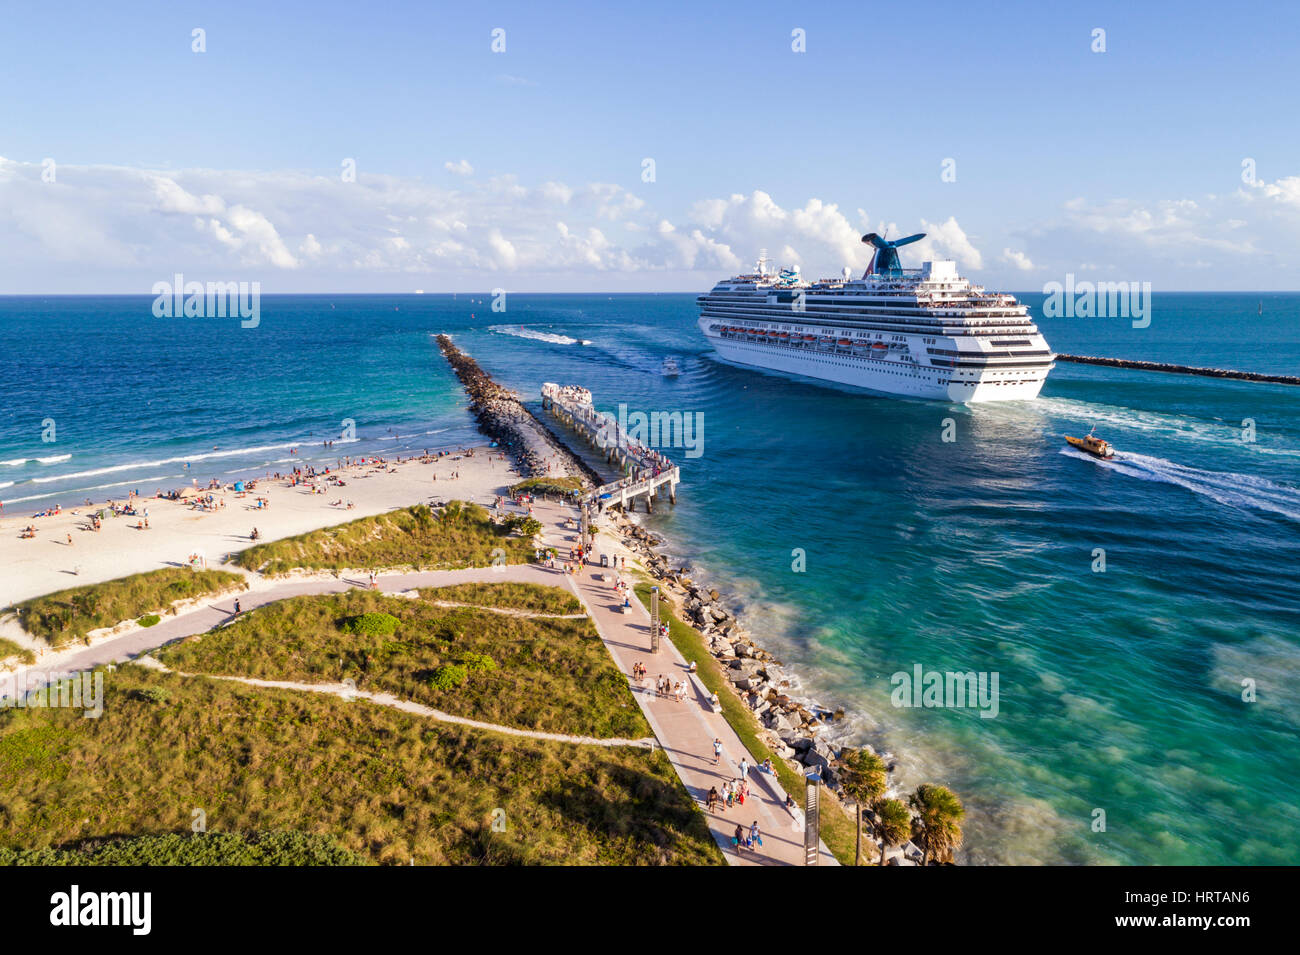 Miami Beach Florida, océan Atlantique, Government Cut, South Pointe Park, navire de croisière Carnival Splendor, au départ de Port Miami, vol aérien depuis la vue ci-dessus Banque D'Images